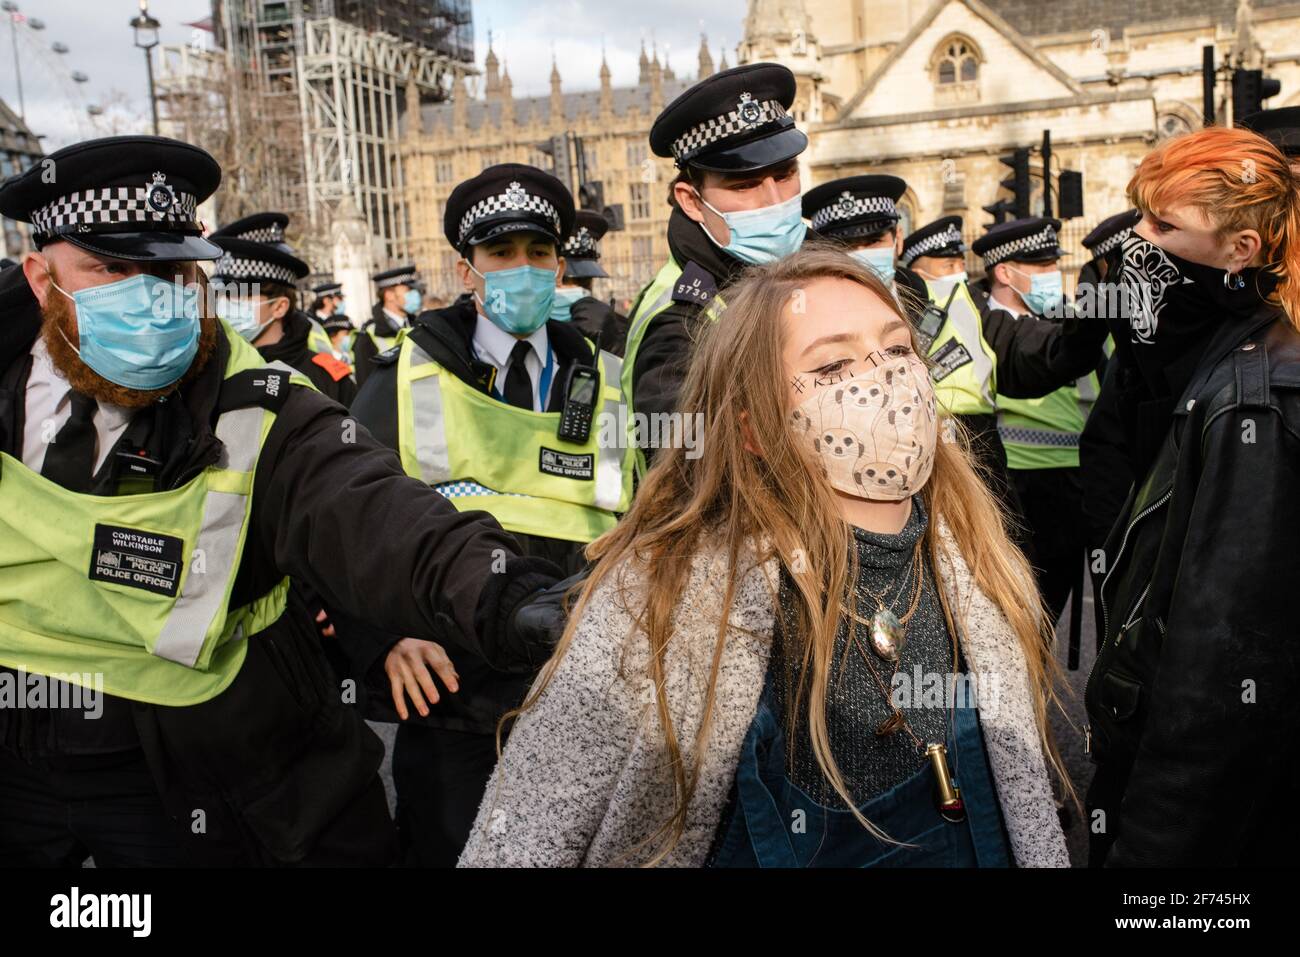 Londres, Royaume-Uni - 3 avril 2021 : manifestation « Kill the Bill », extinction rébellion, Black Lives Matter, Antifa, récupération des rues contre une nouvelle loi policière Banque D'Images